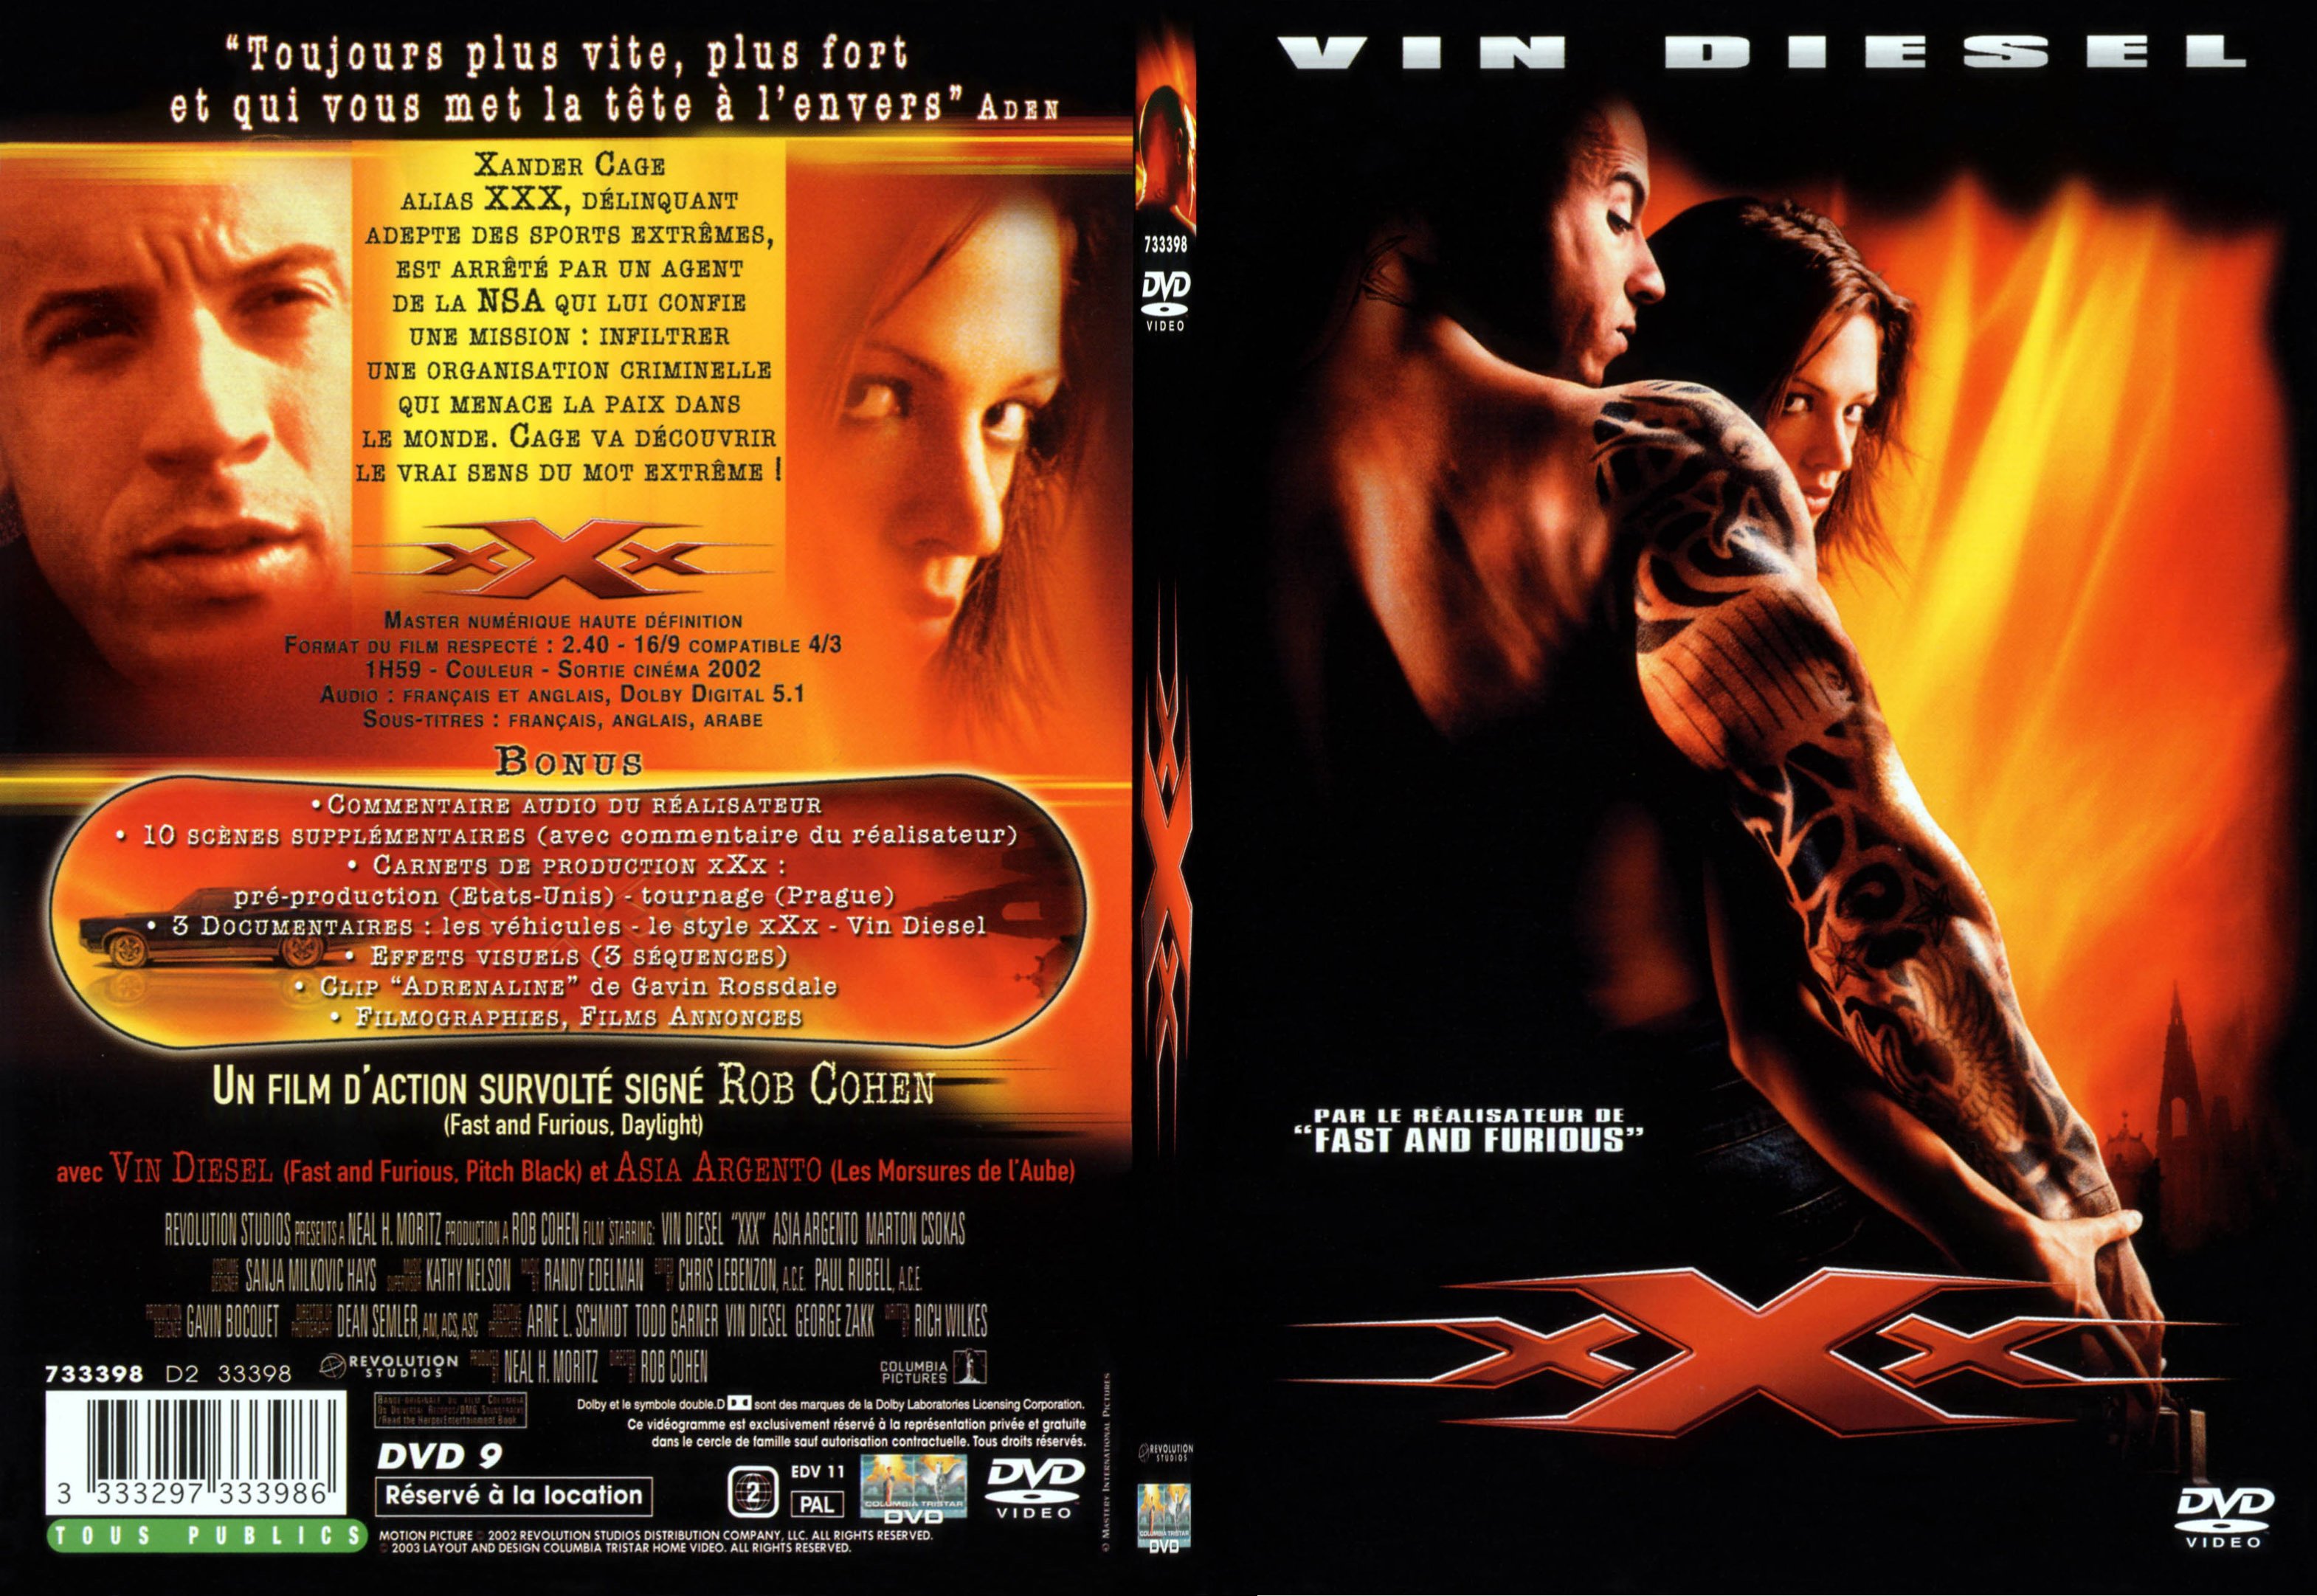 Jaquette DVD de X-men - Cinéma Passion